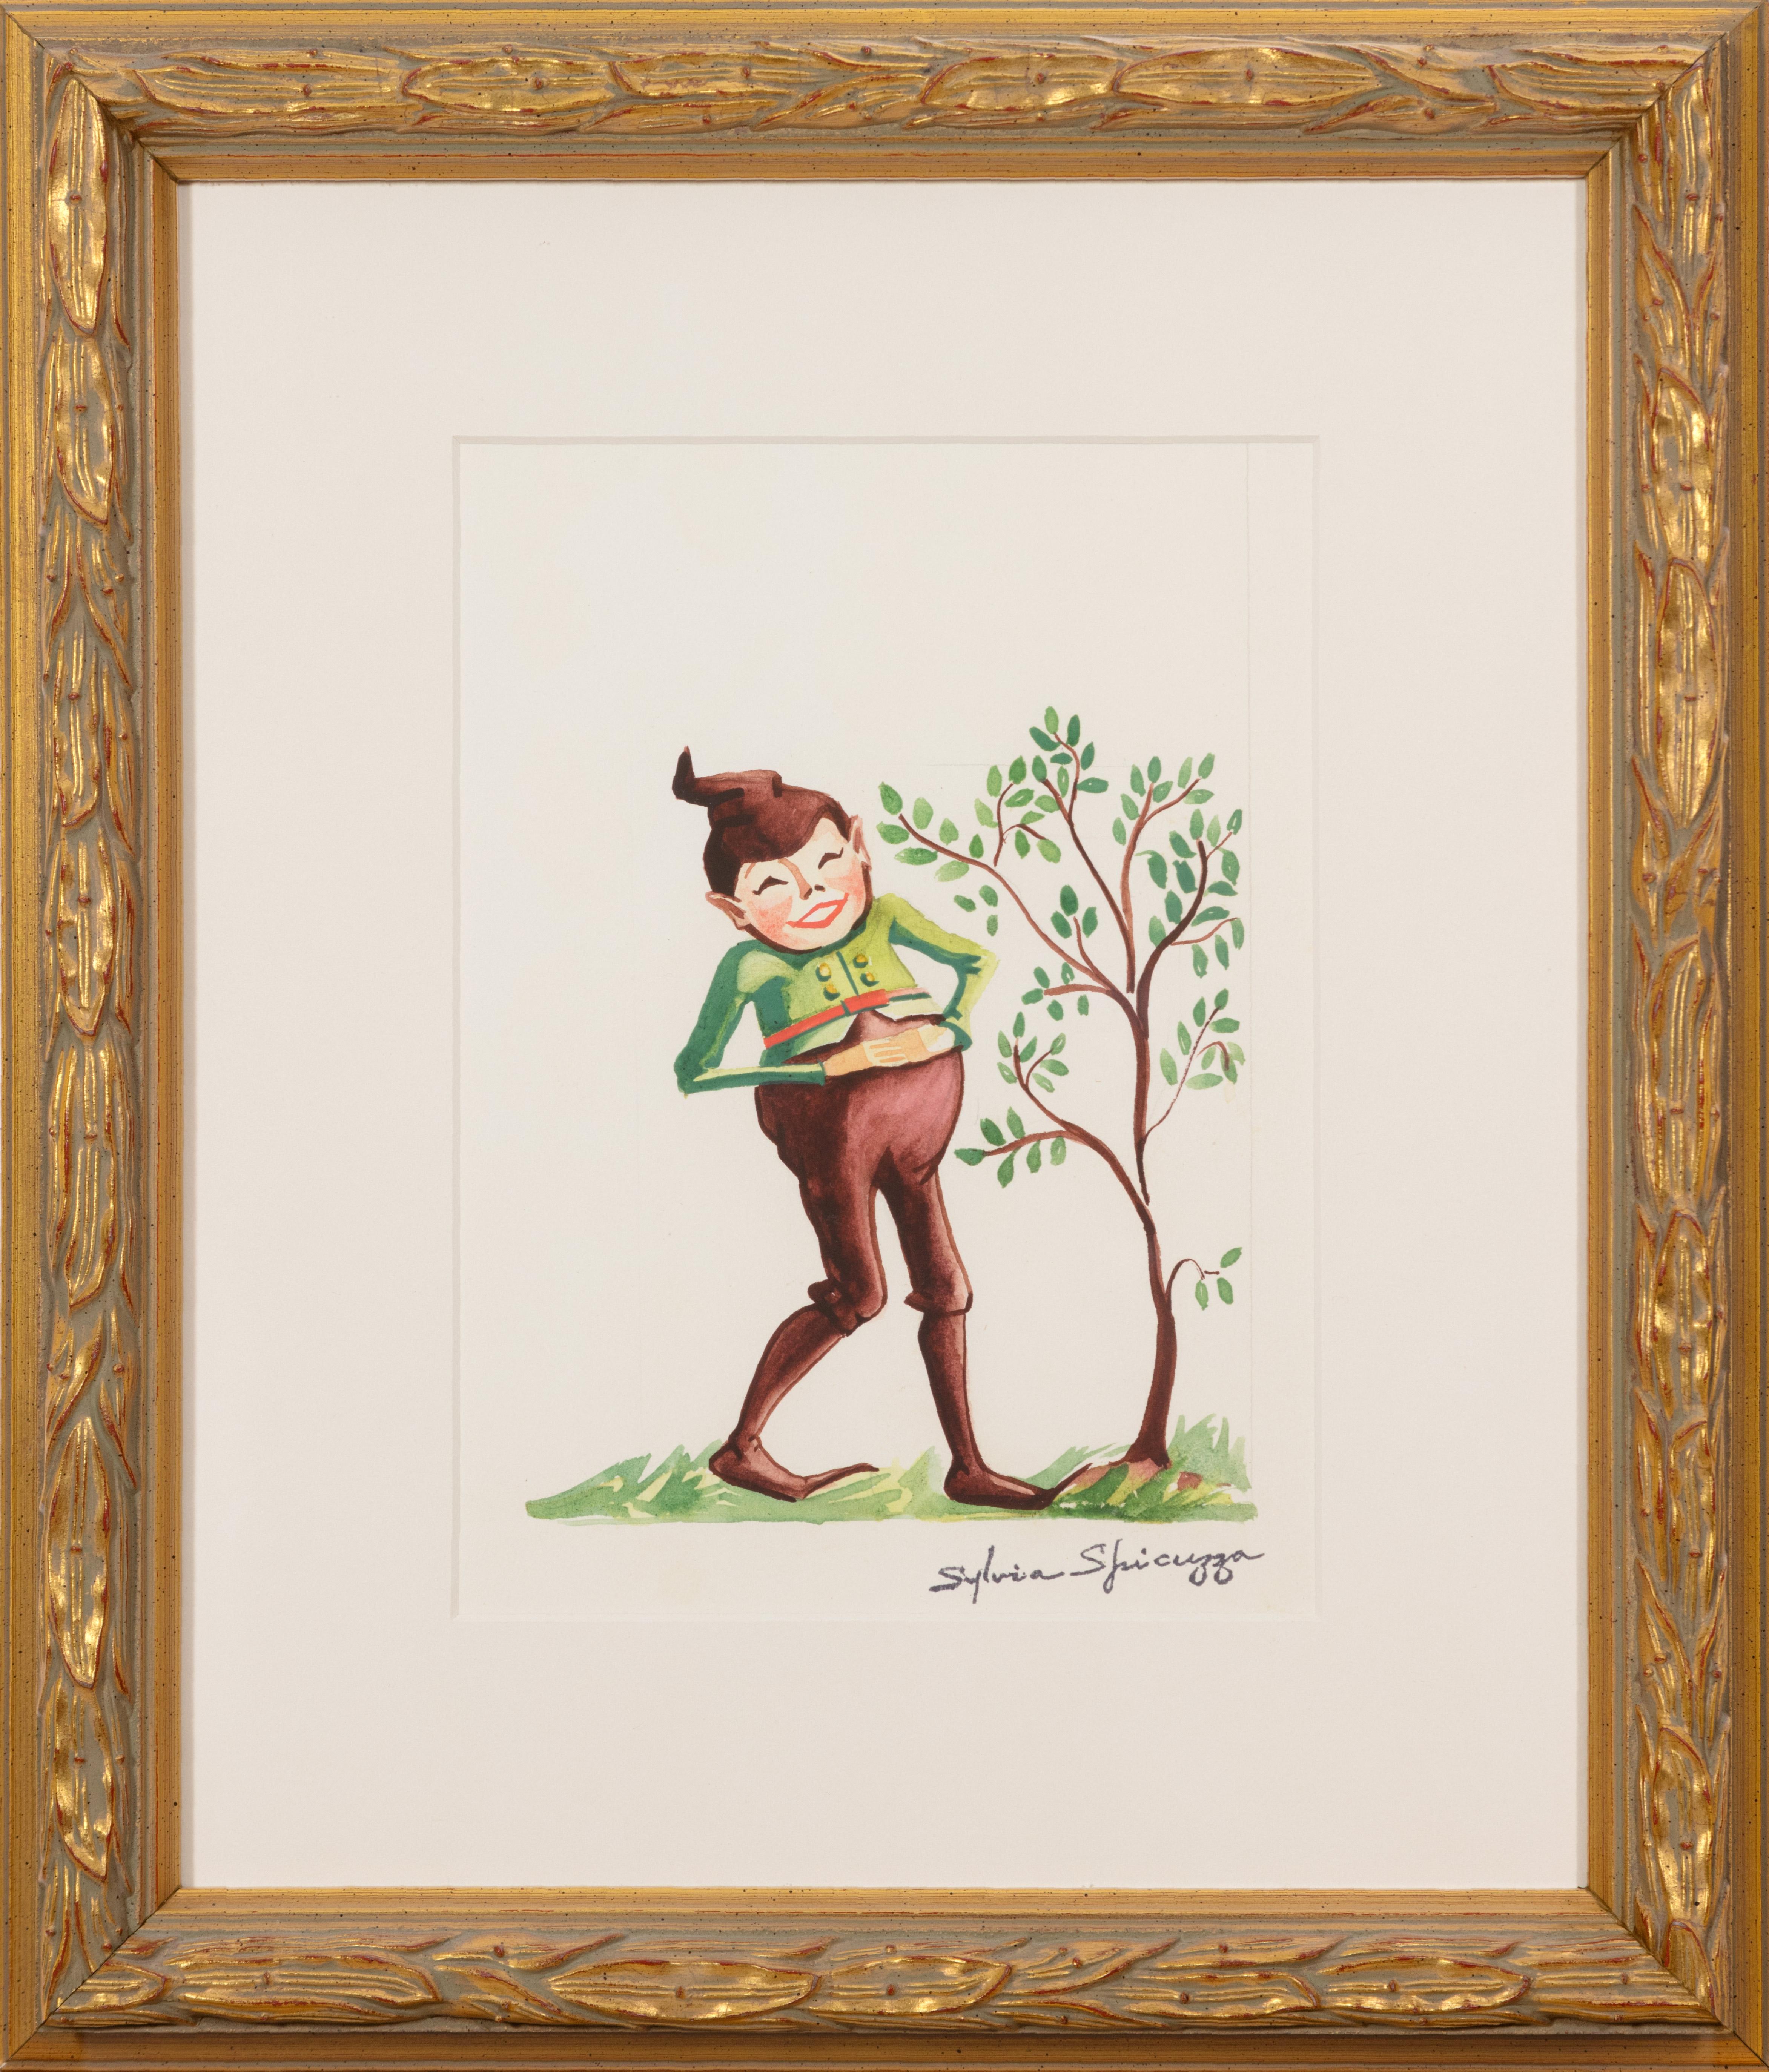 Auf diesem Bild zeigt Sylvia Spicuzza ihr Können als Illustratorin, indem sie die Milwaukee-Figur Billie the Brownie mit einer wachsenden Baumquelle darstellt. Eine Illustration wie diese könnte die Seiten eines Kinderbuchs oder einer illustrierten